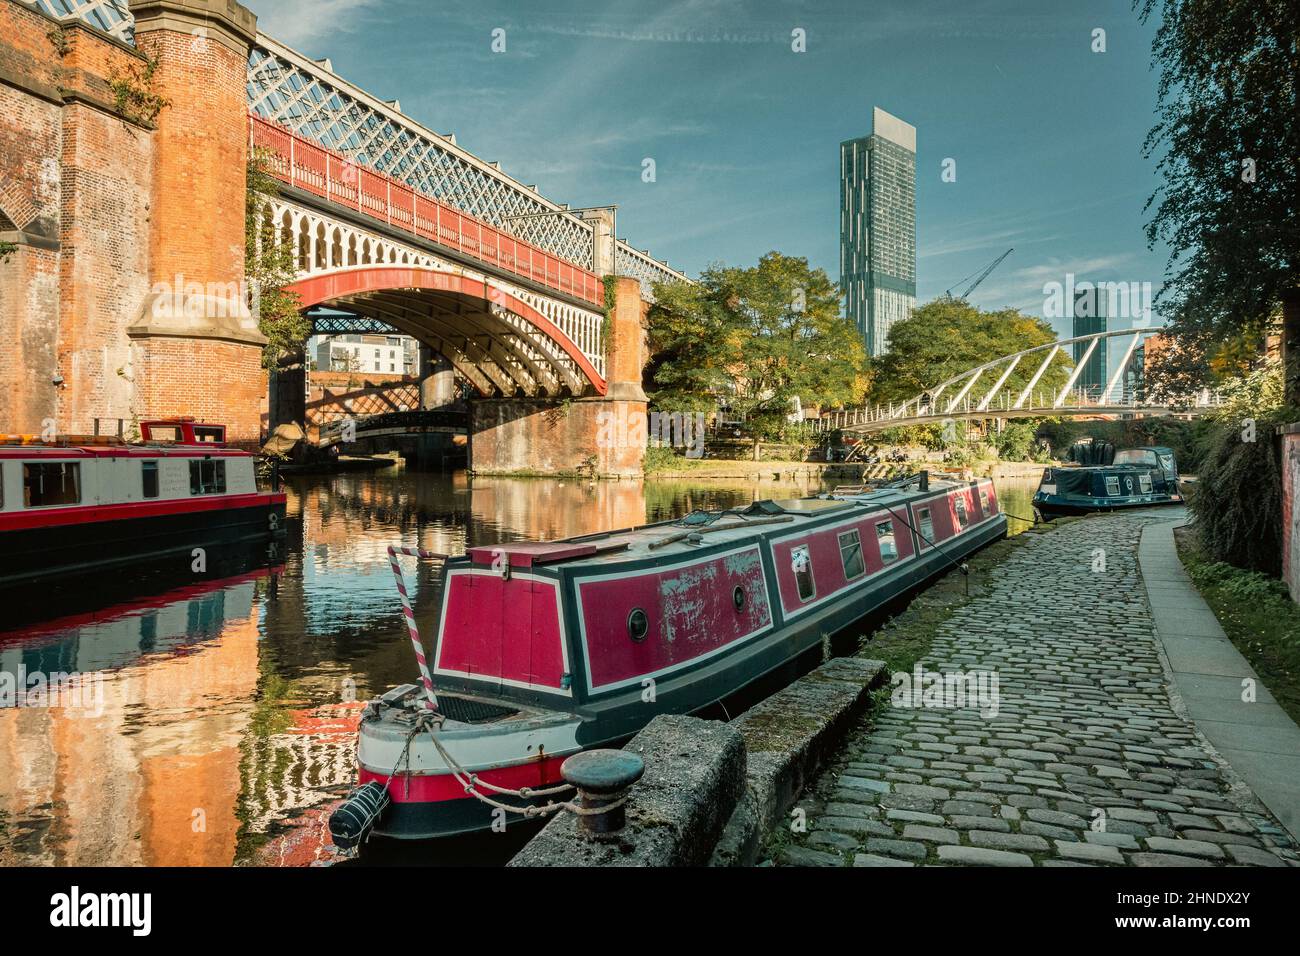 Bateaux étroits sur le canal Bridgewater près du pont du marchand, Castlefields, Manchester Banque D'Images